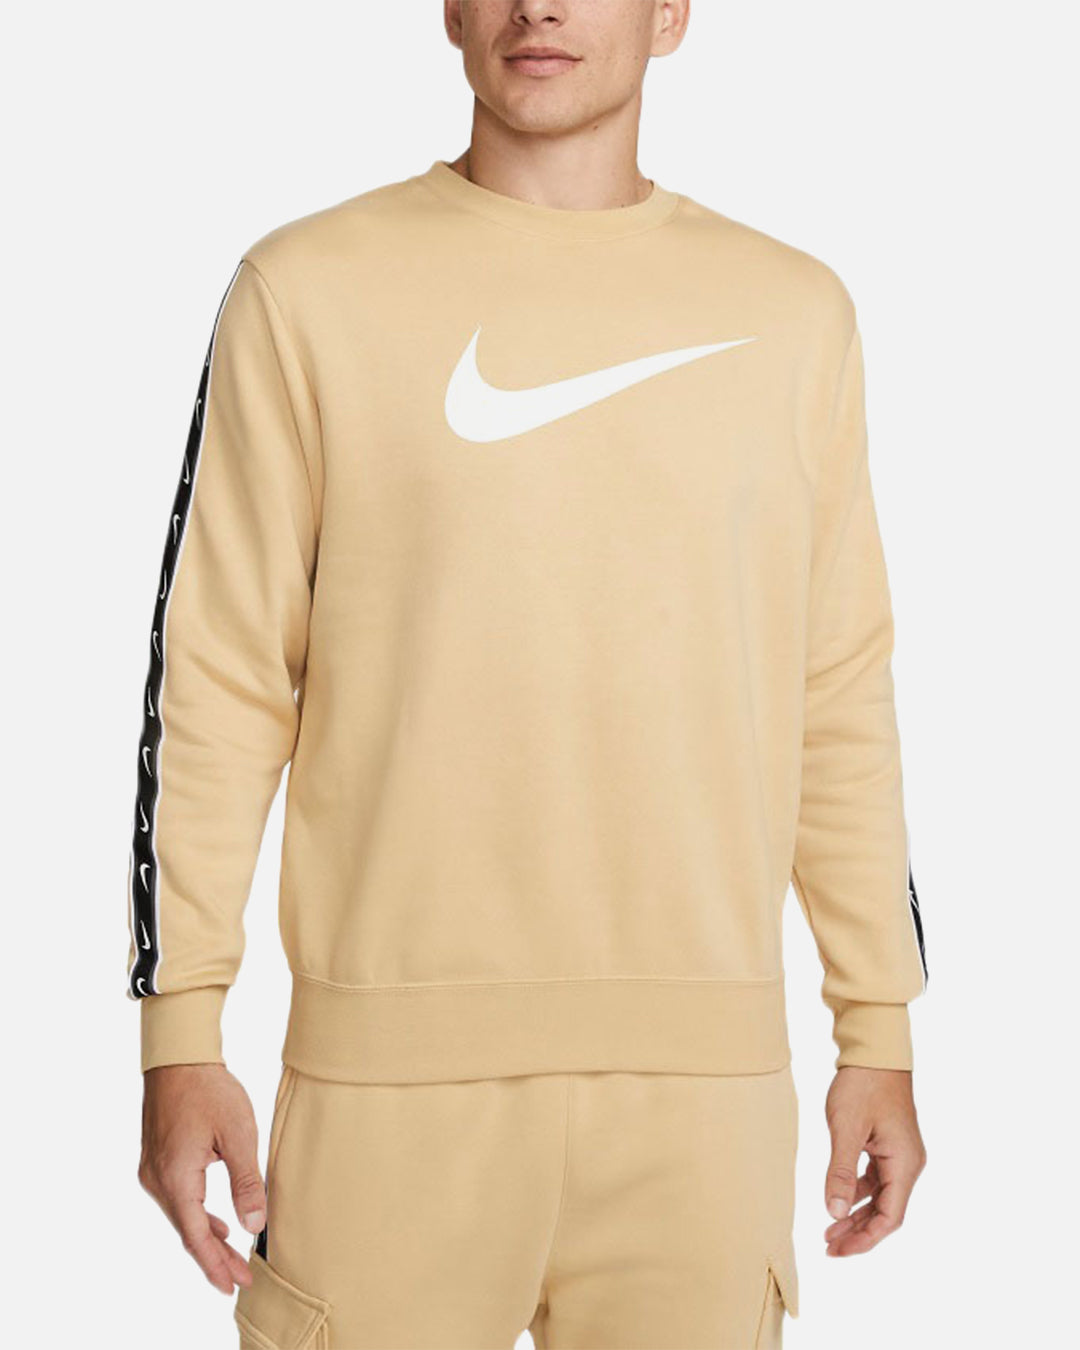 Felpa Nike Sportswear Fleece - Beige/Bianco/Nero